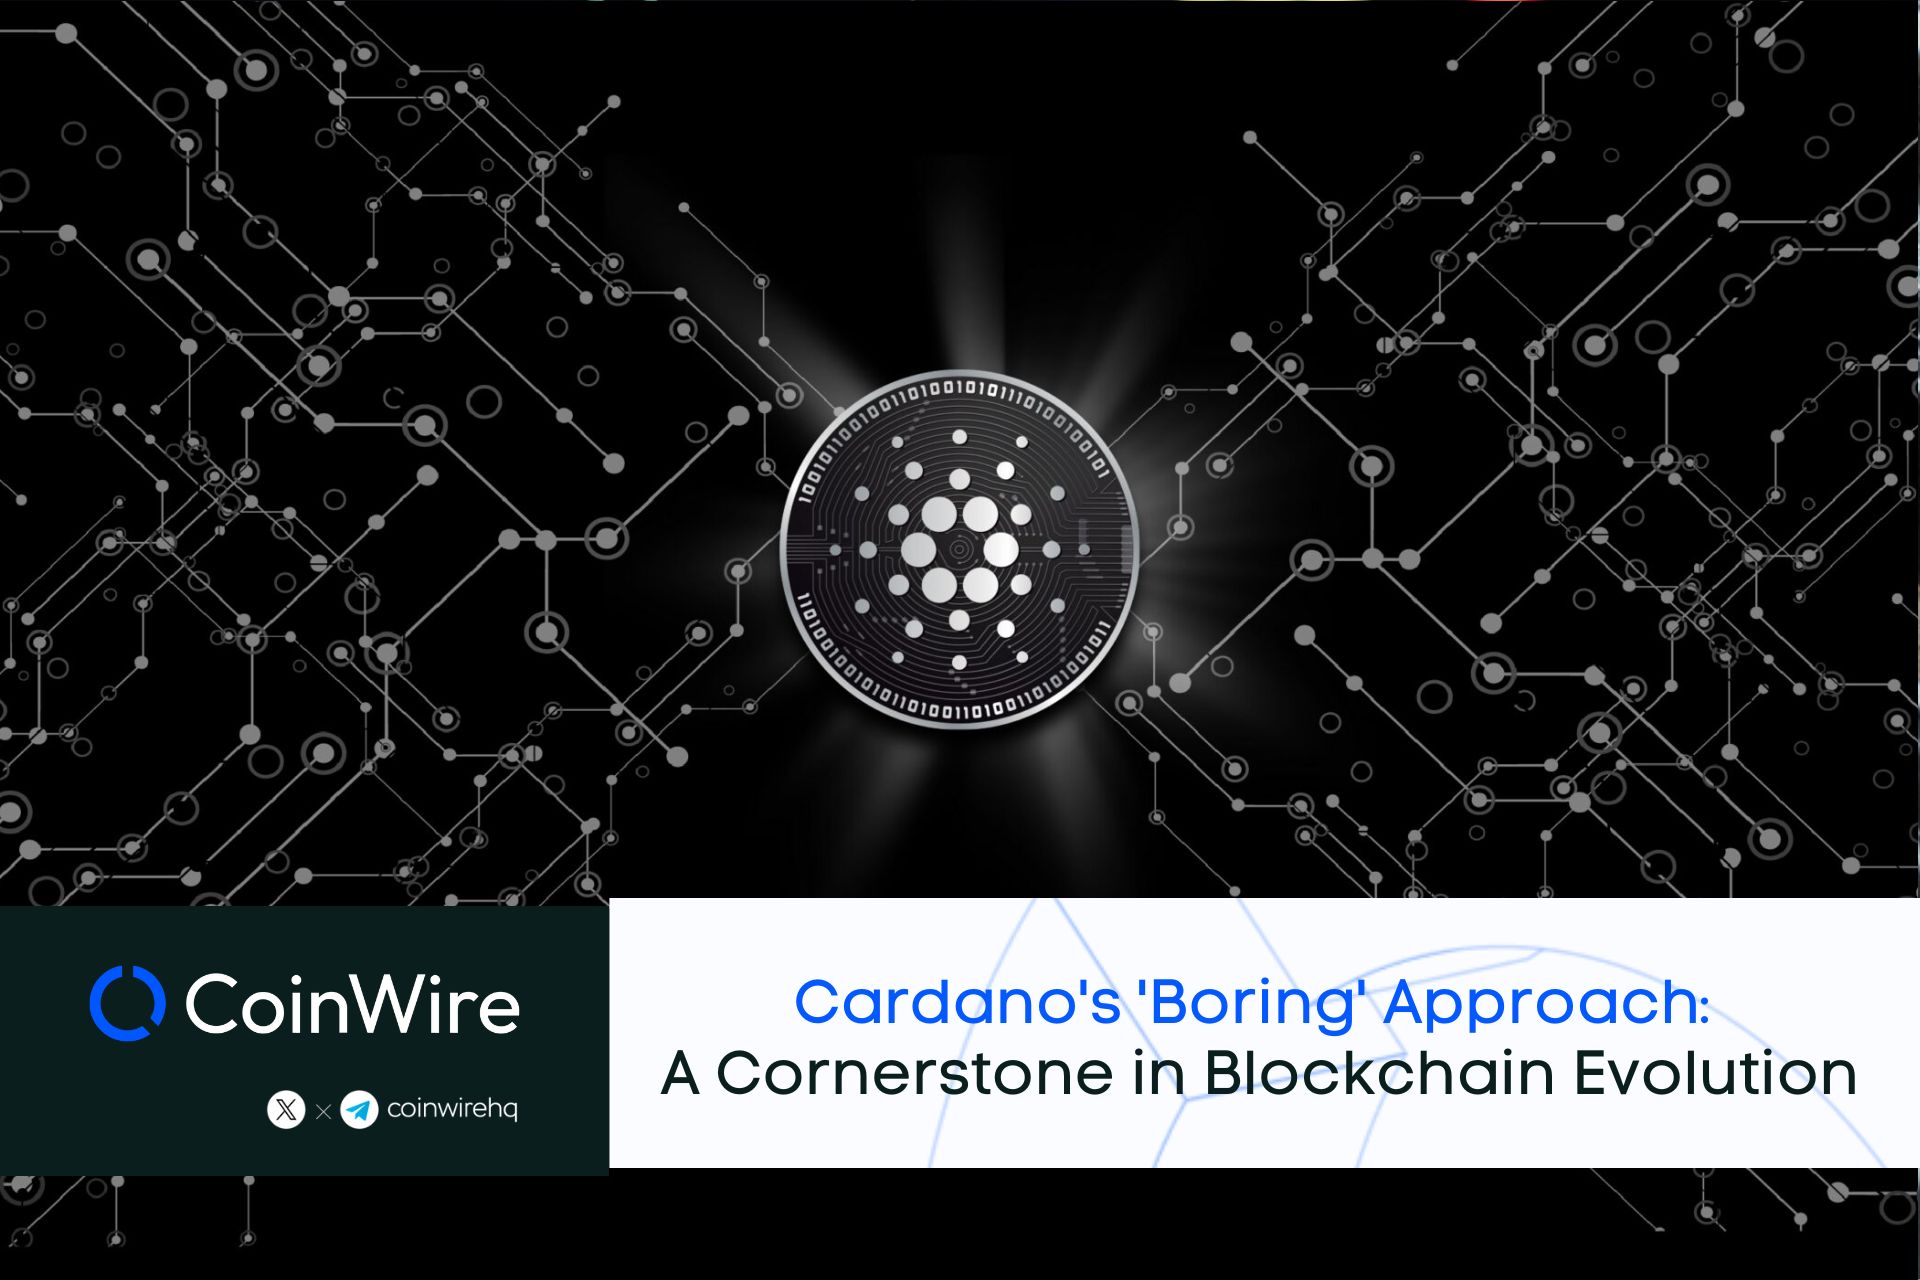 Cardano's 'Boring' Approach: A Cornerstone in Blockchain Evolution